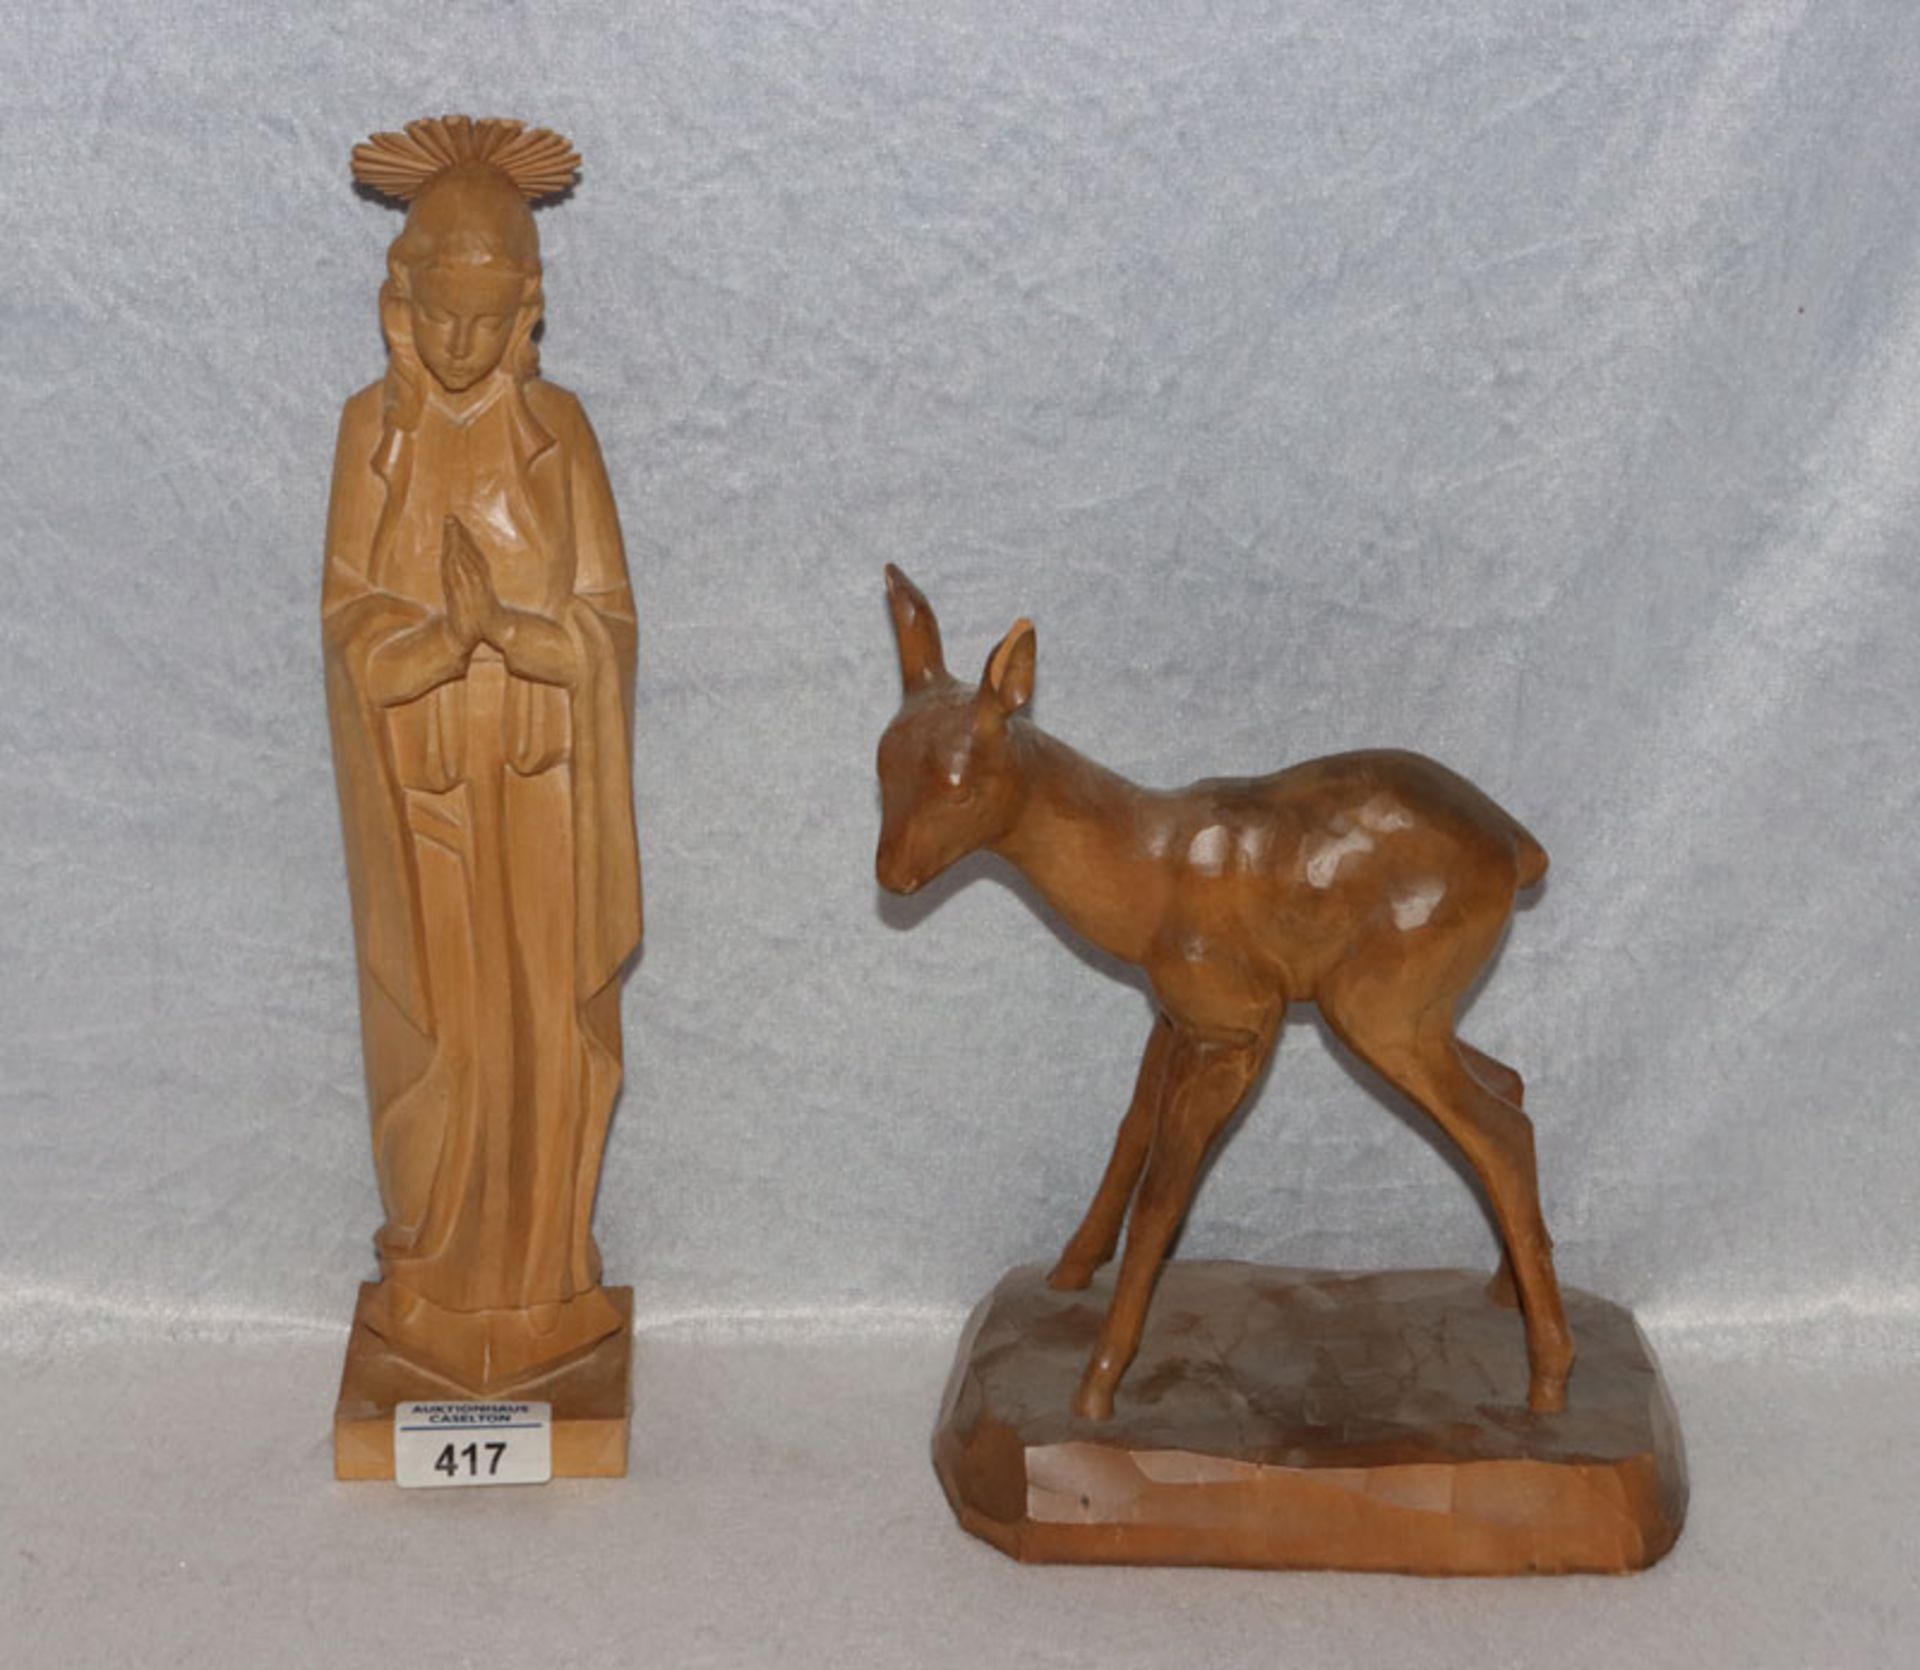 Holz Figur 'Madonna', H 34 cm, und Holz Tierfigur 'Reh', H 24 cm, gebeizt, bestossen, Altersspuren